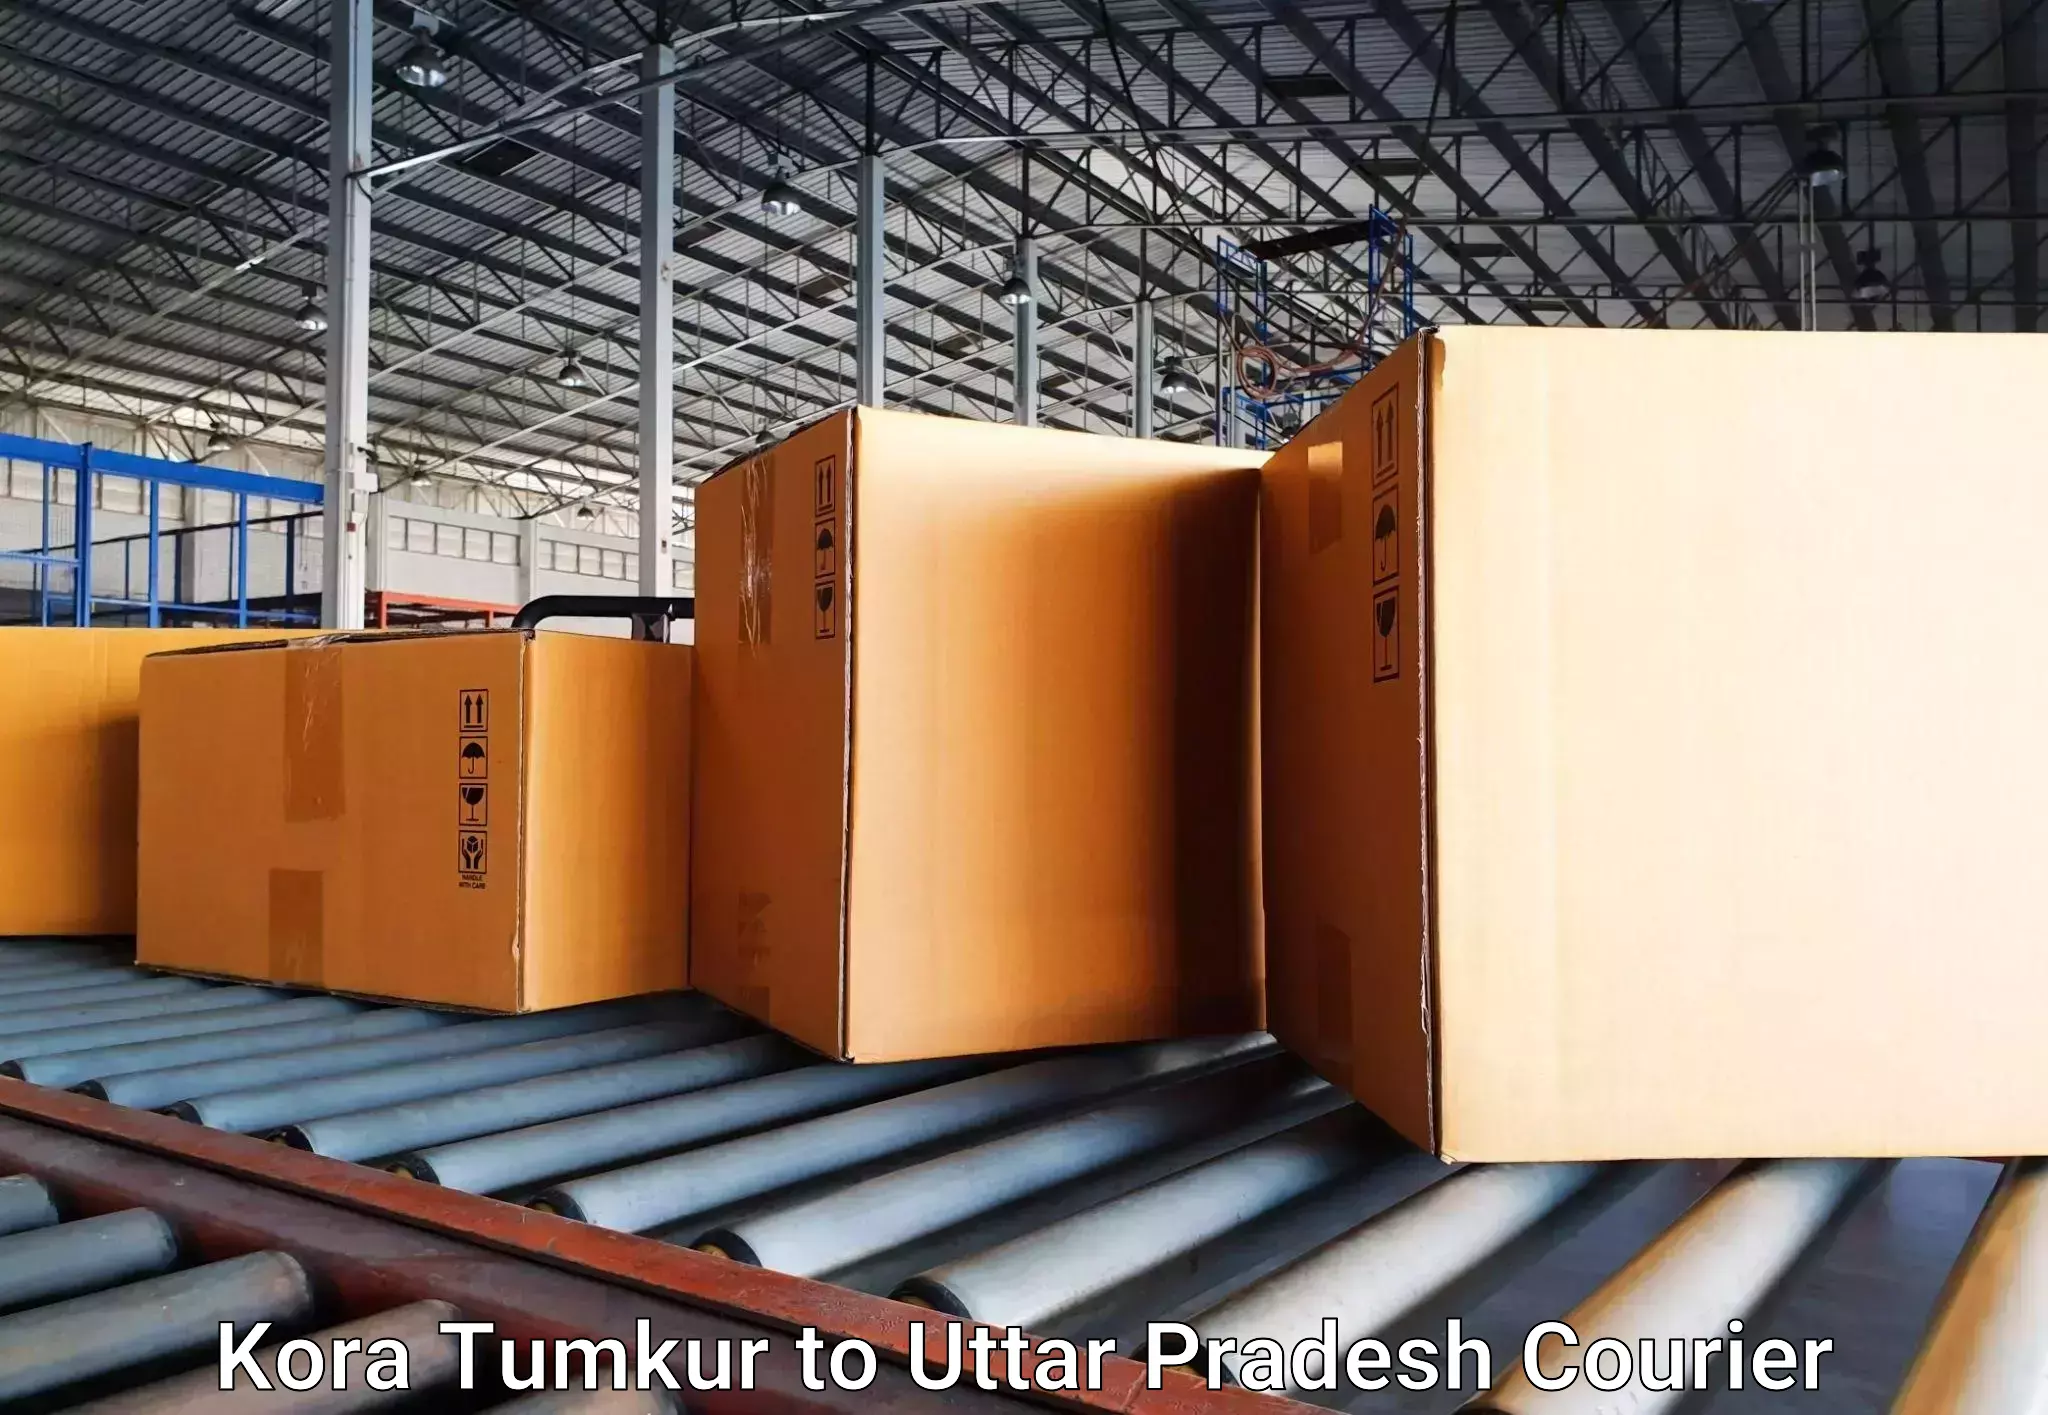 Luggage delivery estimate Kora Tumkur to Agra